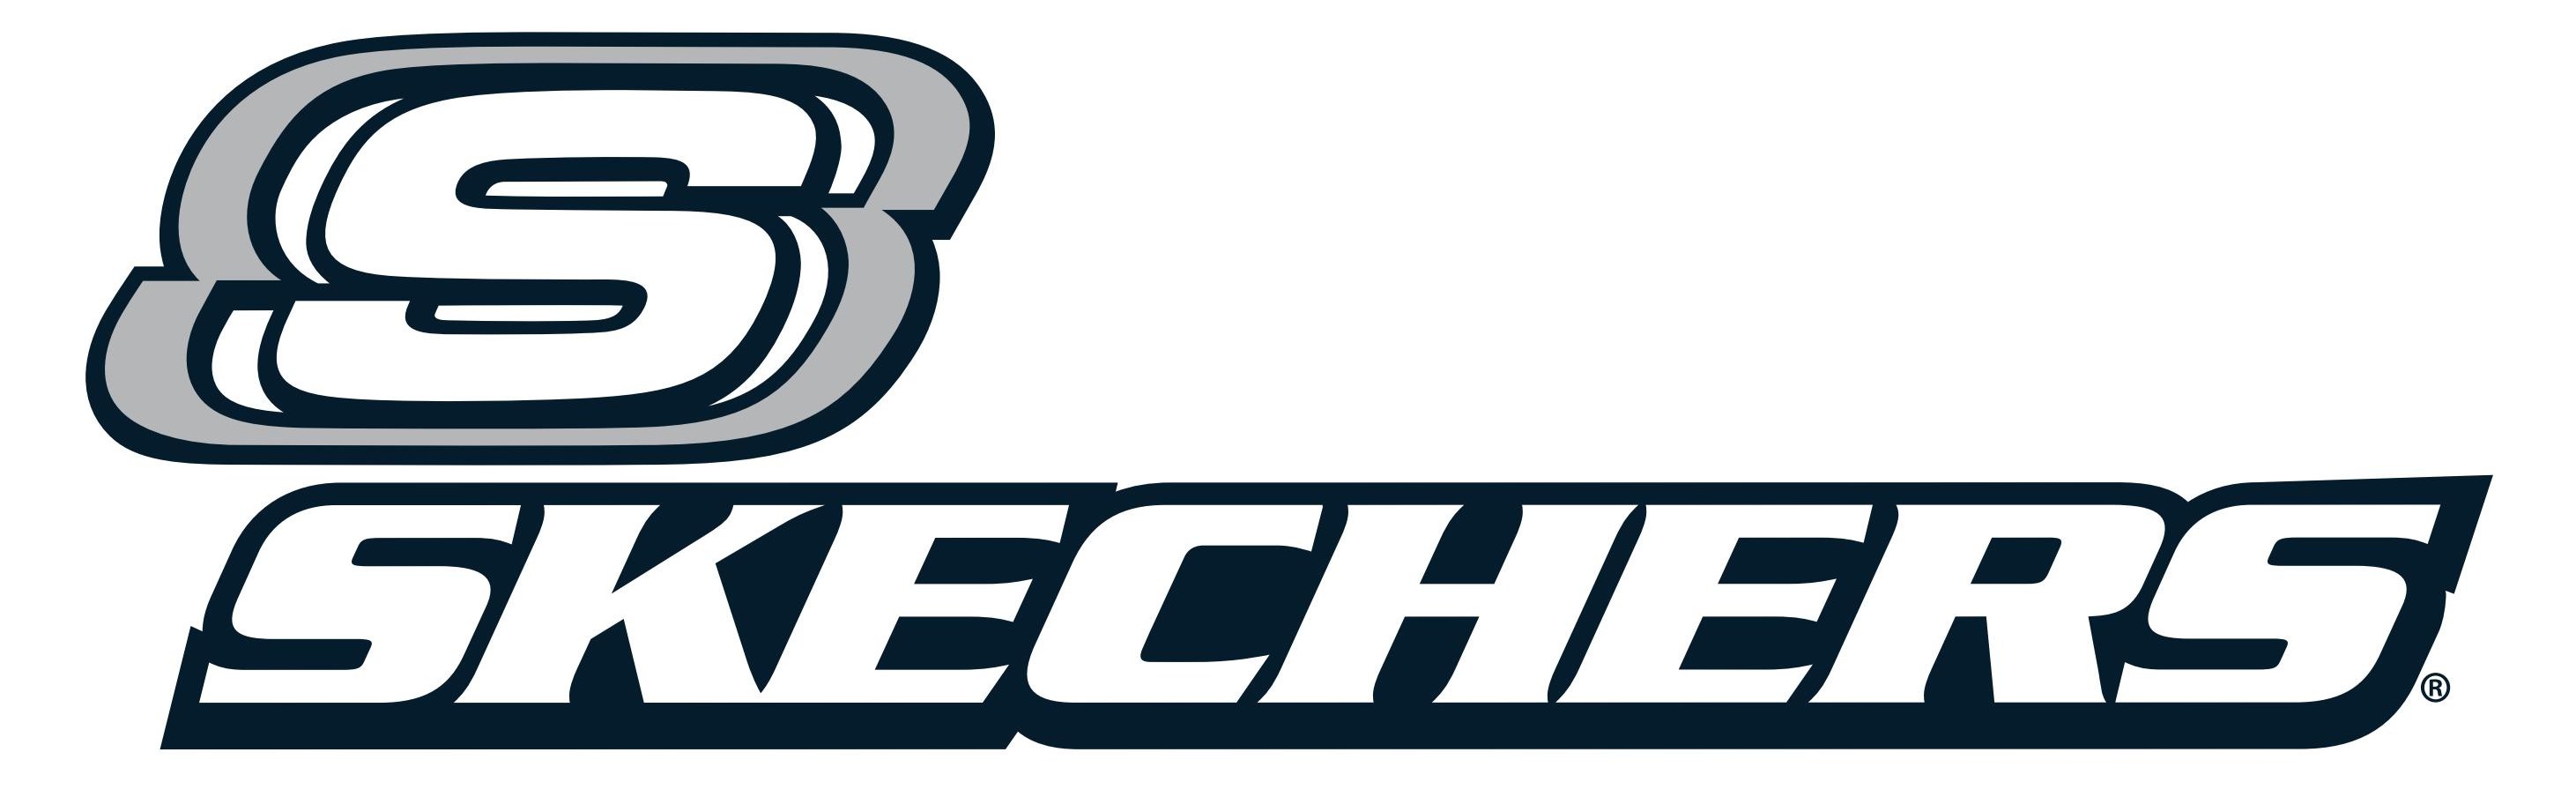 SKECHERS_BLU-logo. SKECHERS